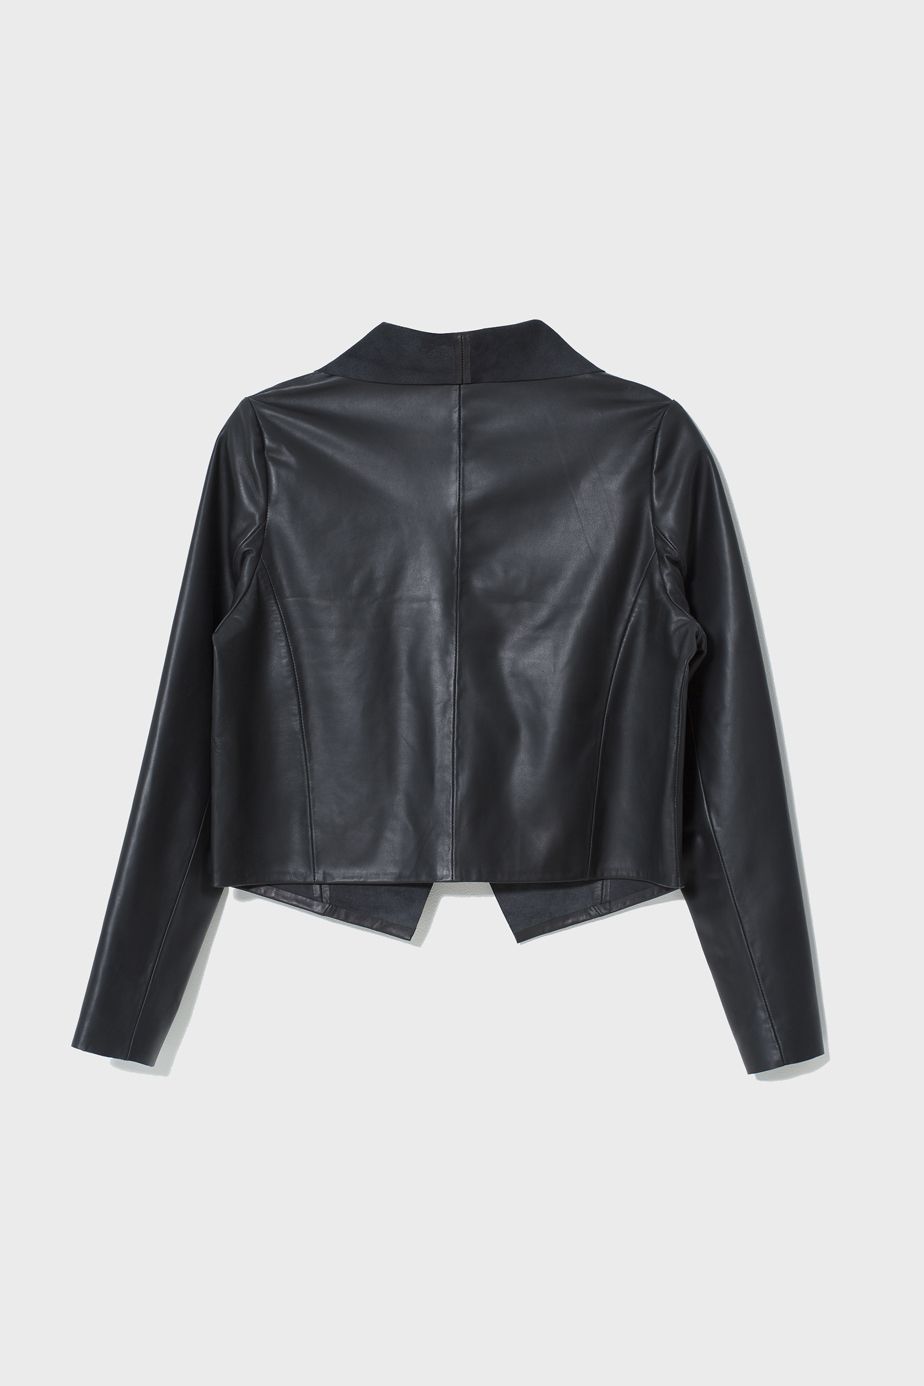 Fine Leather Lightweight Jacket Back Black